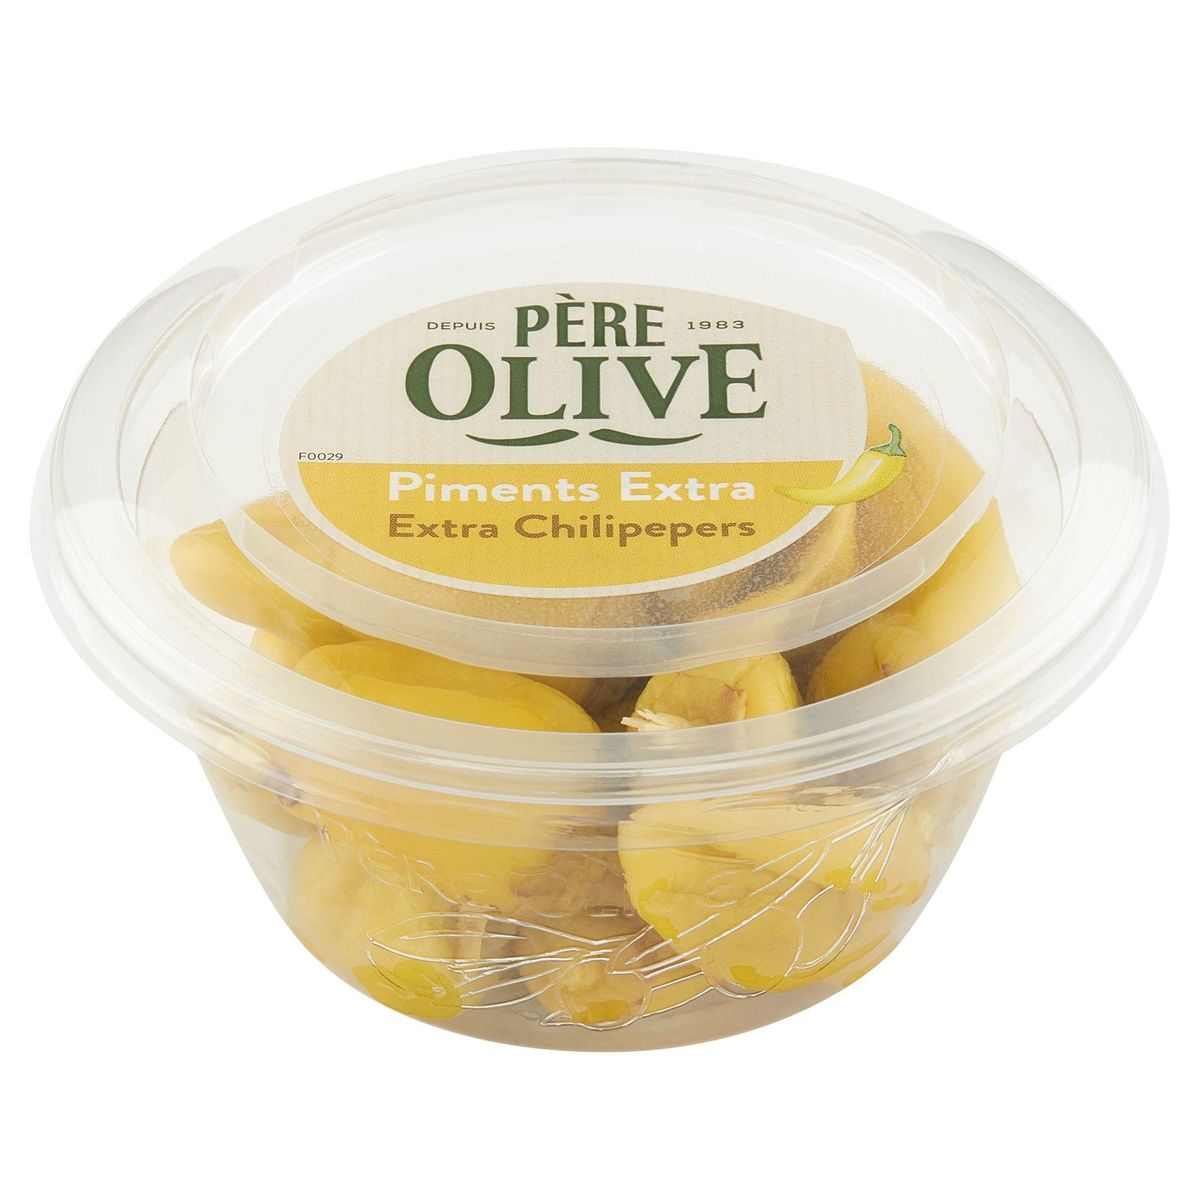 Père Olive Piments Extra 100 g